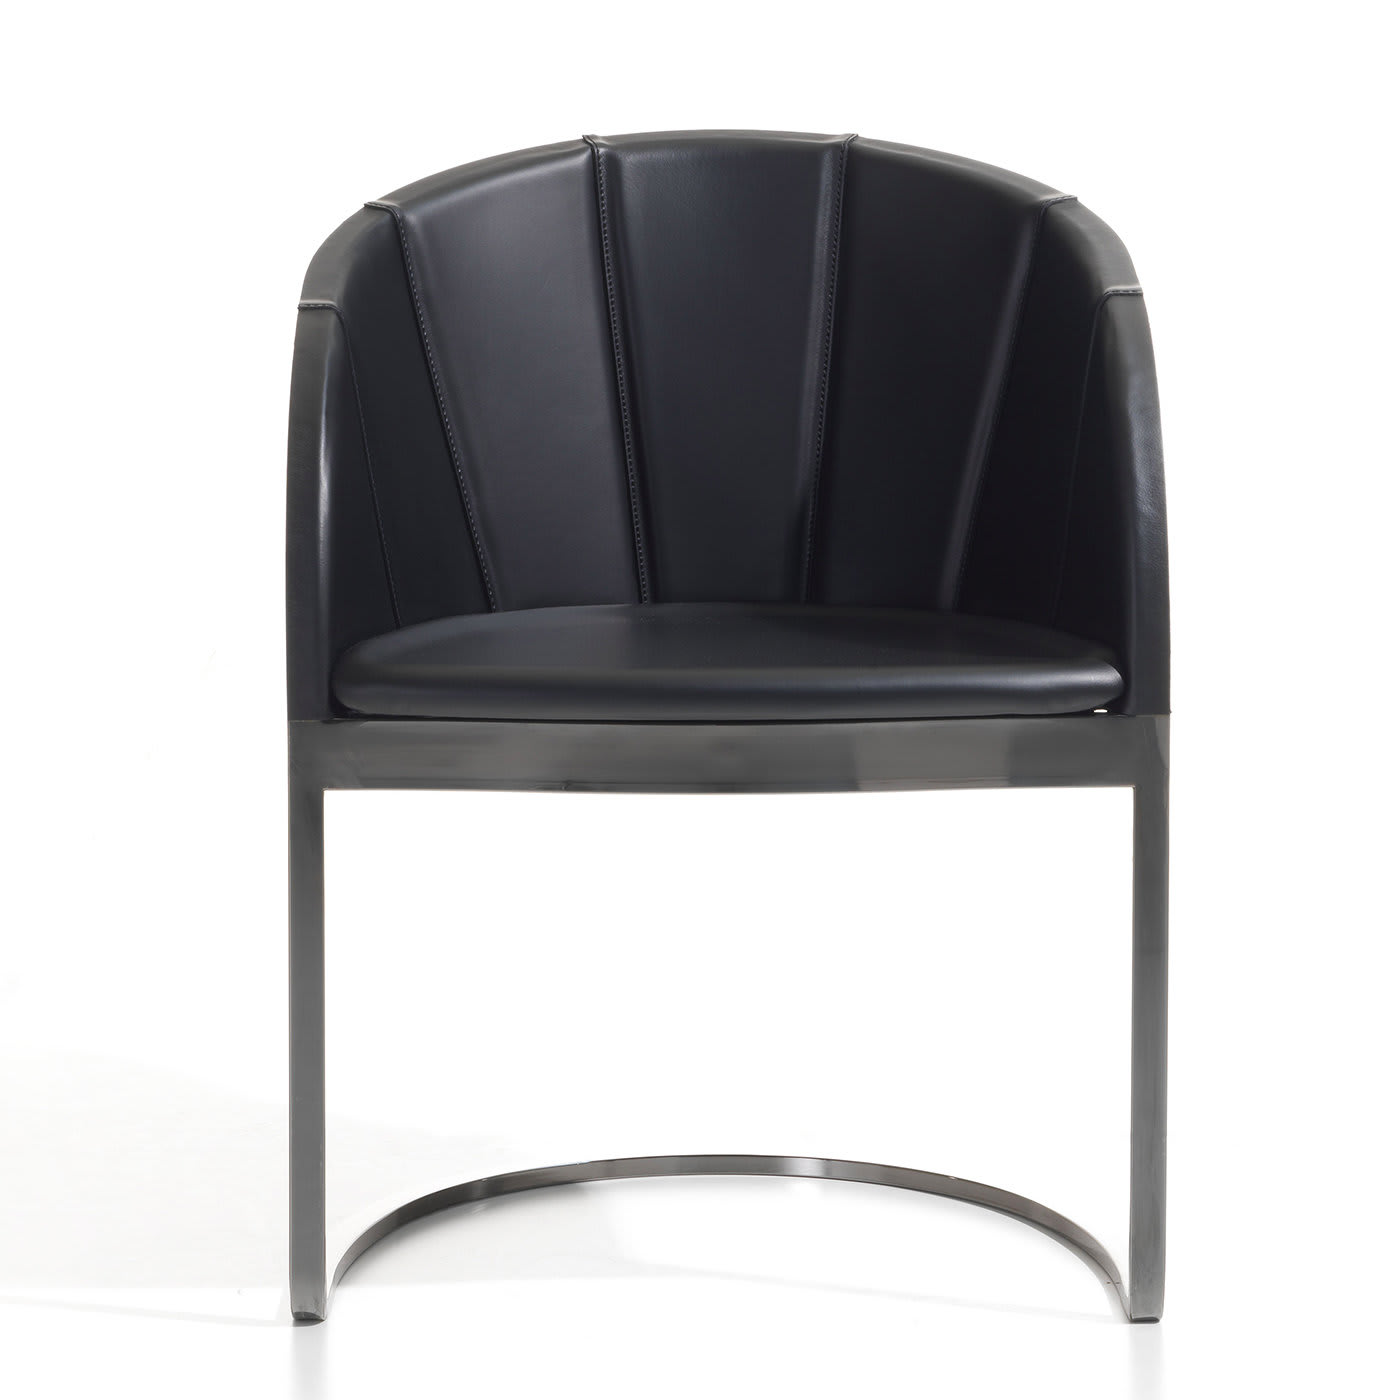 Aurelia Black Chair - Meroni & Colzani